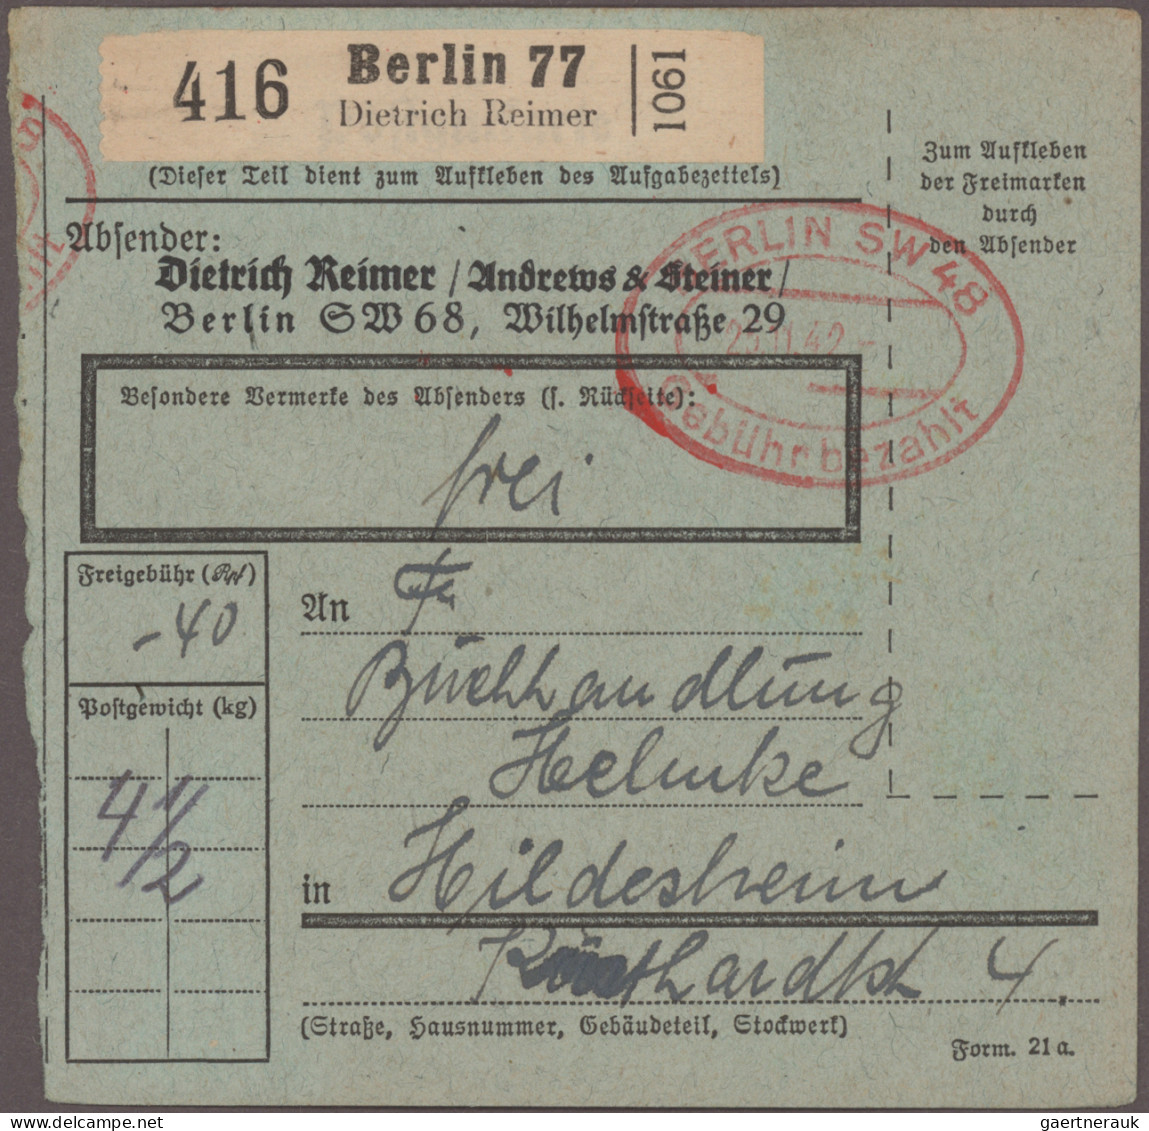 Heimat: Berlin: 1777/1980 (ca.), umfassende und wertvolle Sammlung "BERLIN-STEMP